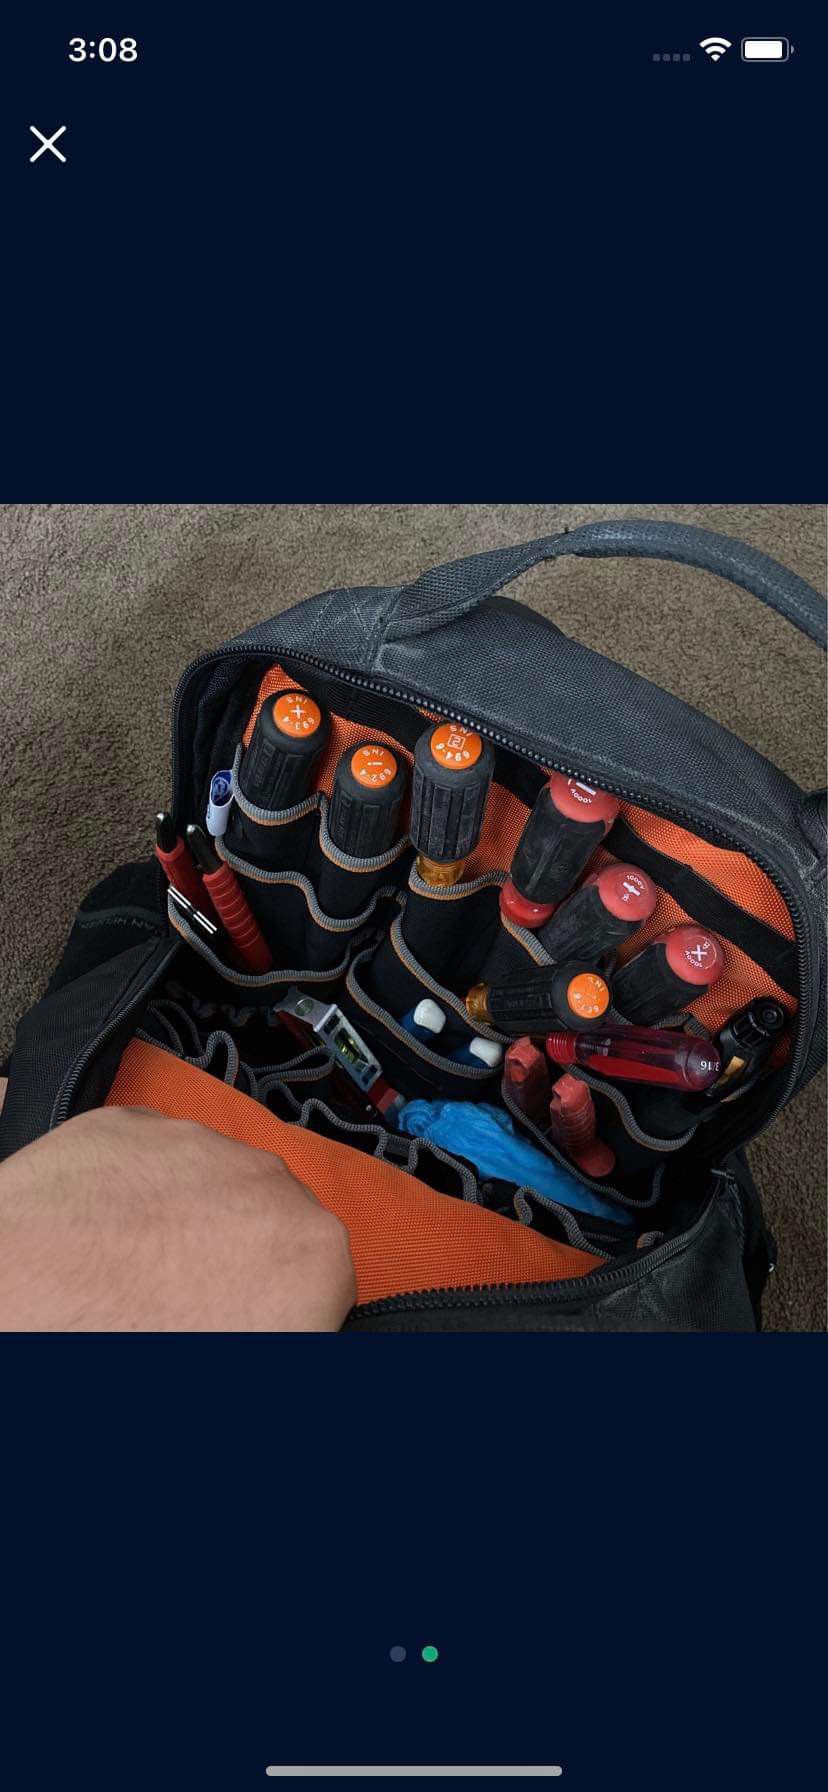 Klein Tools Backpack 